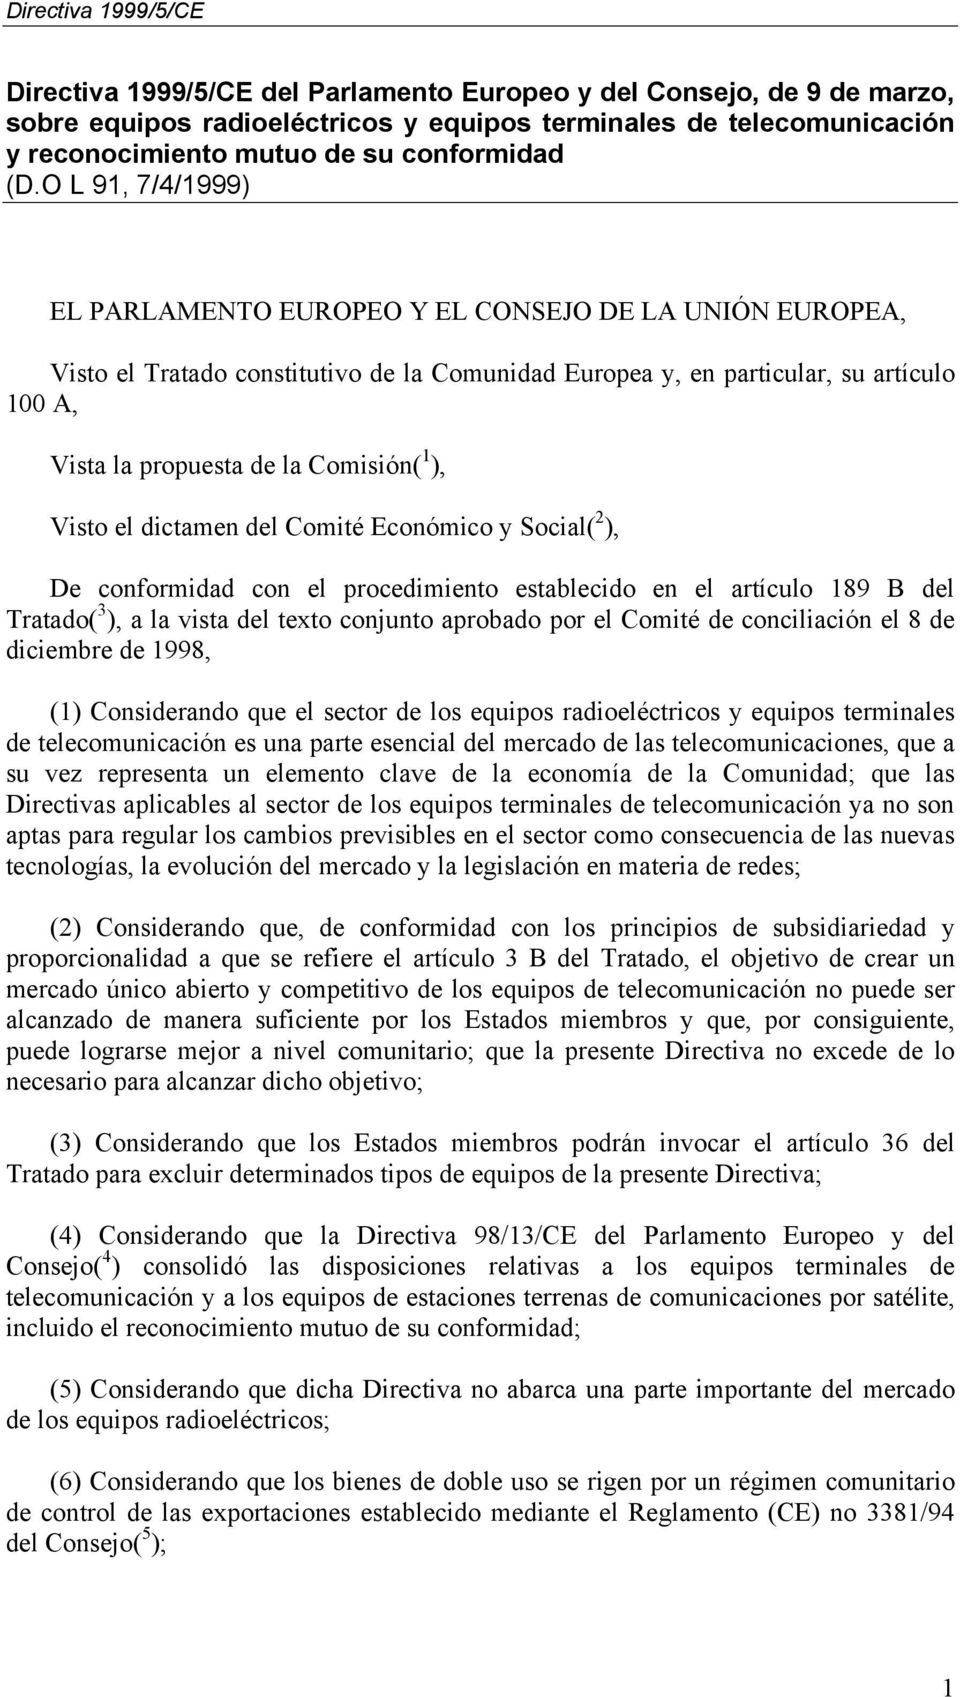 1 ), Visto el dictamen del Comité Económico y Social( 2 ), De conformidad con el procedimiento establecido en el artículo 189 B del Tratado( 3 ), a la vista del texto conjunto aprobado por el Comité